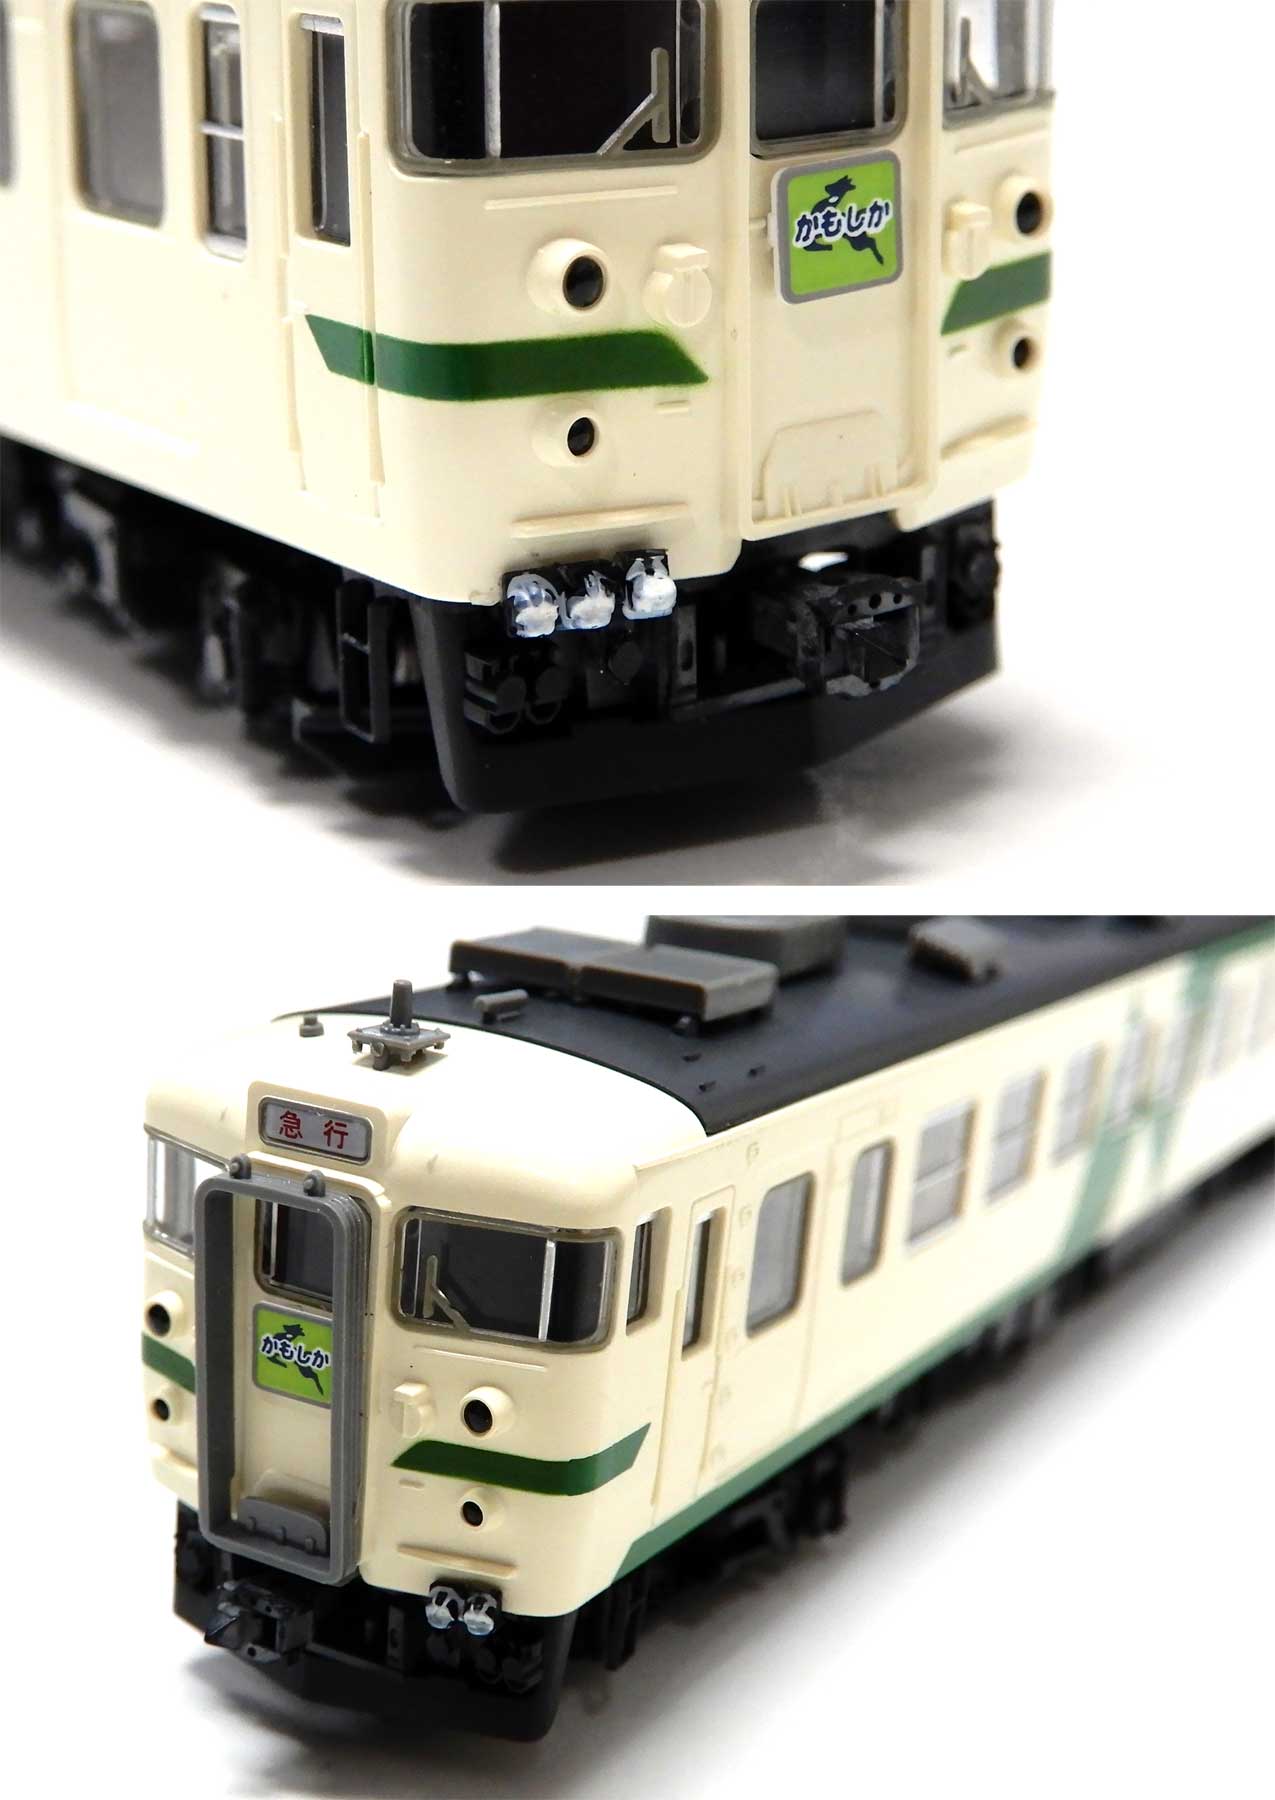 公式]鉄道模型(92503169系 急行電車 (かもしか) 4両セット)商品詳細 